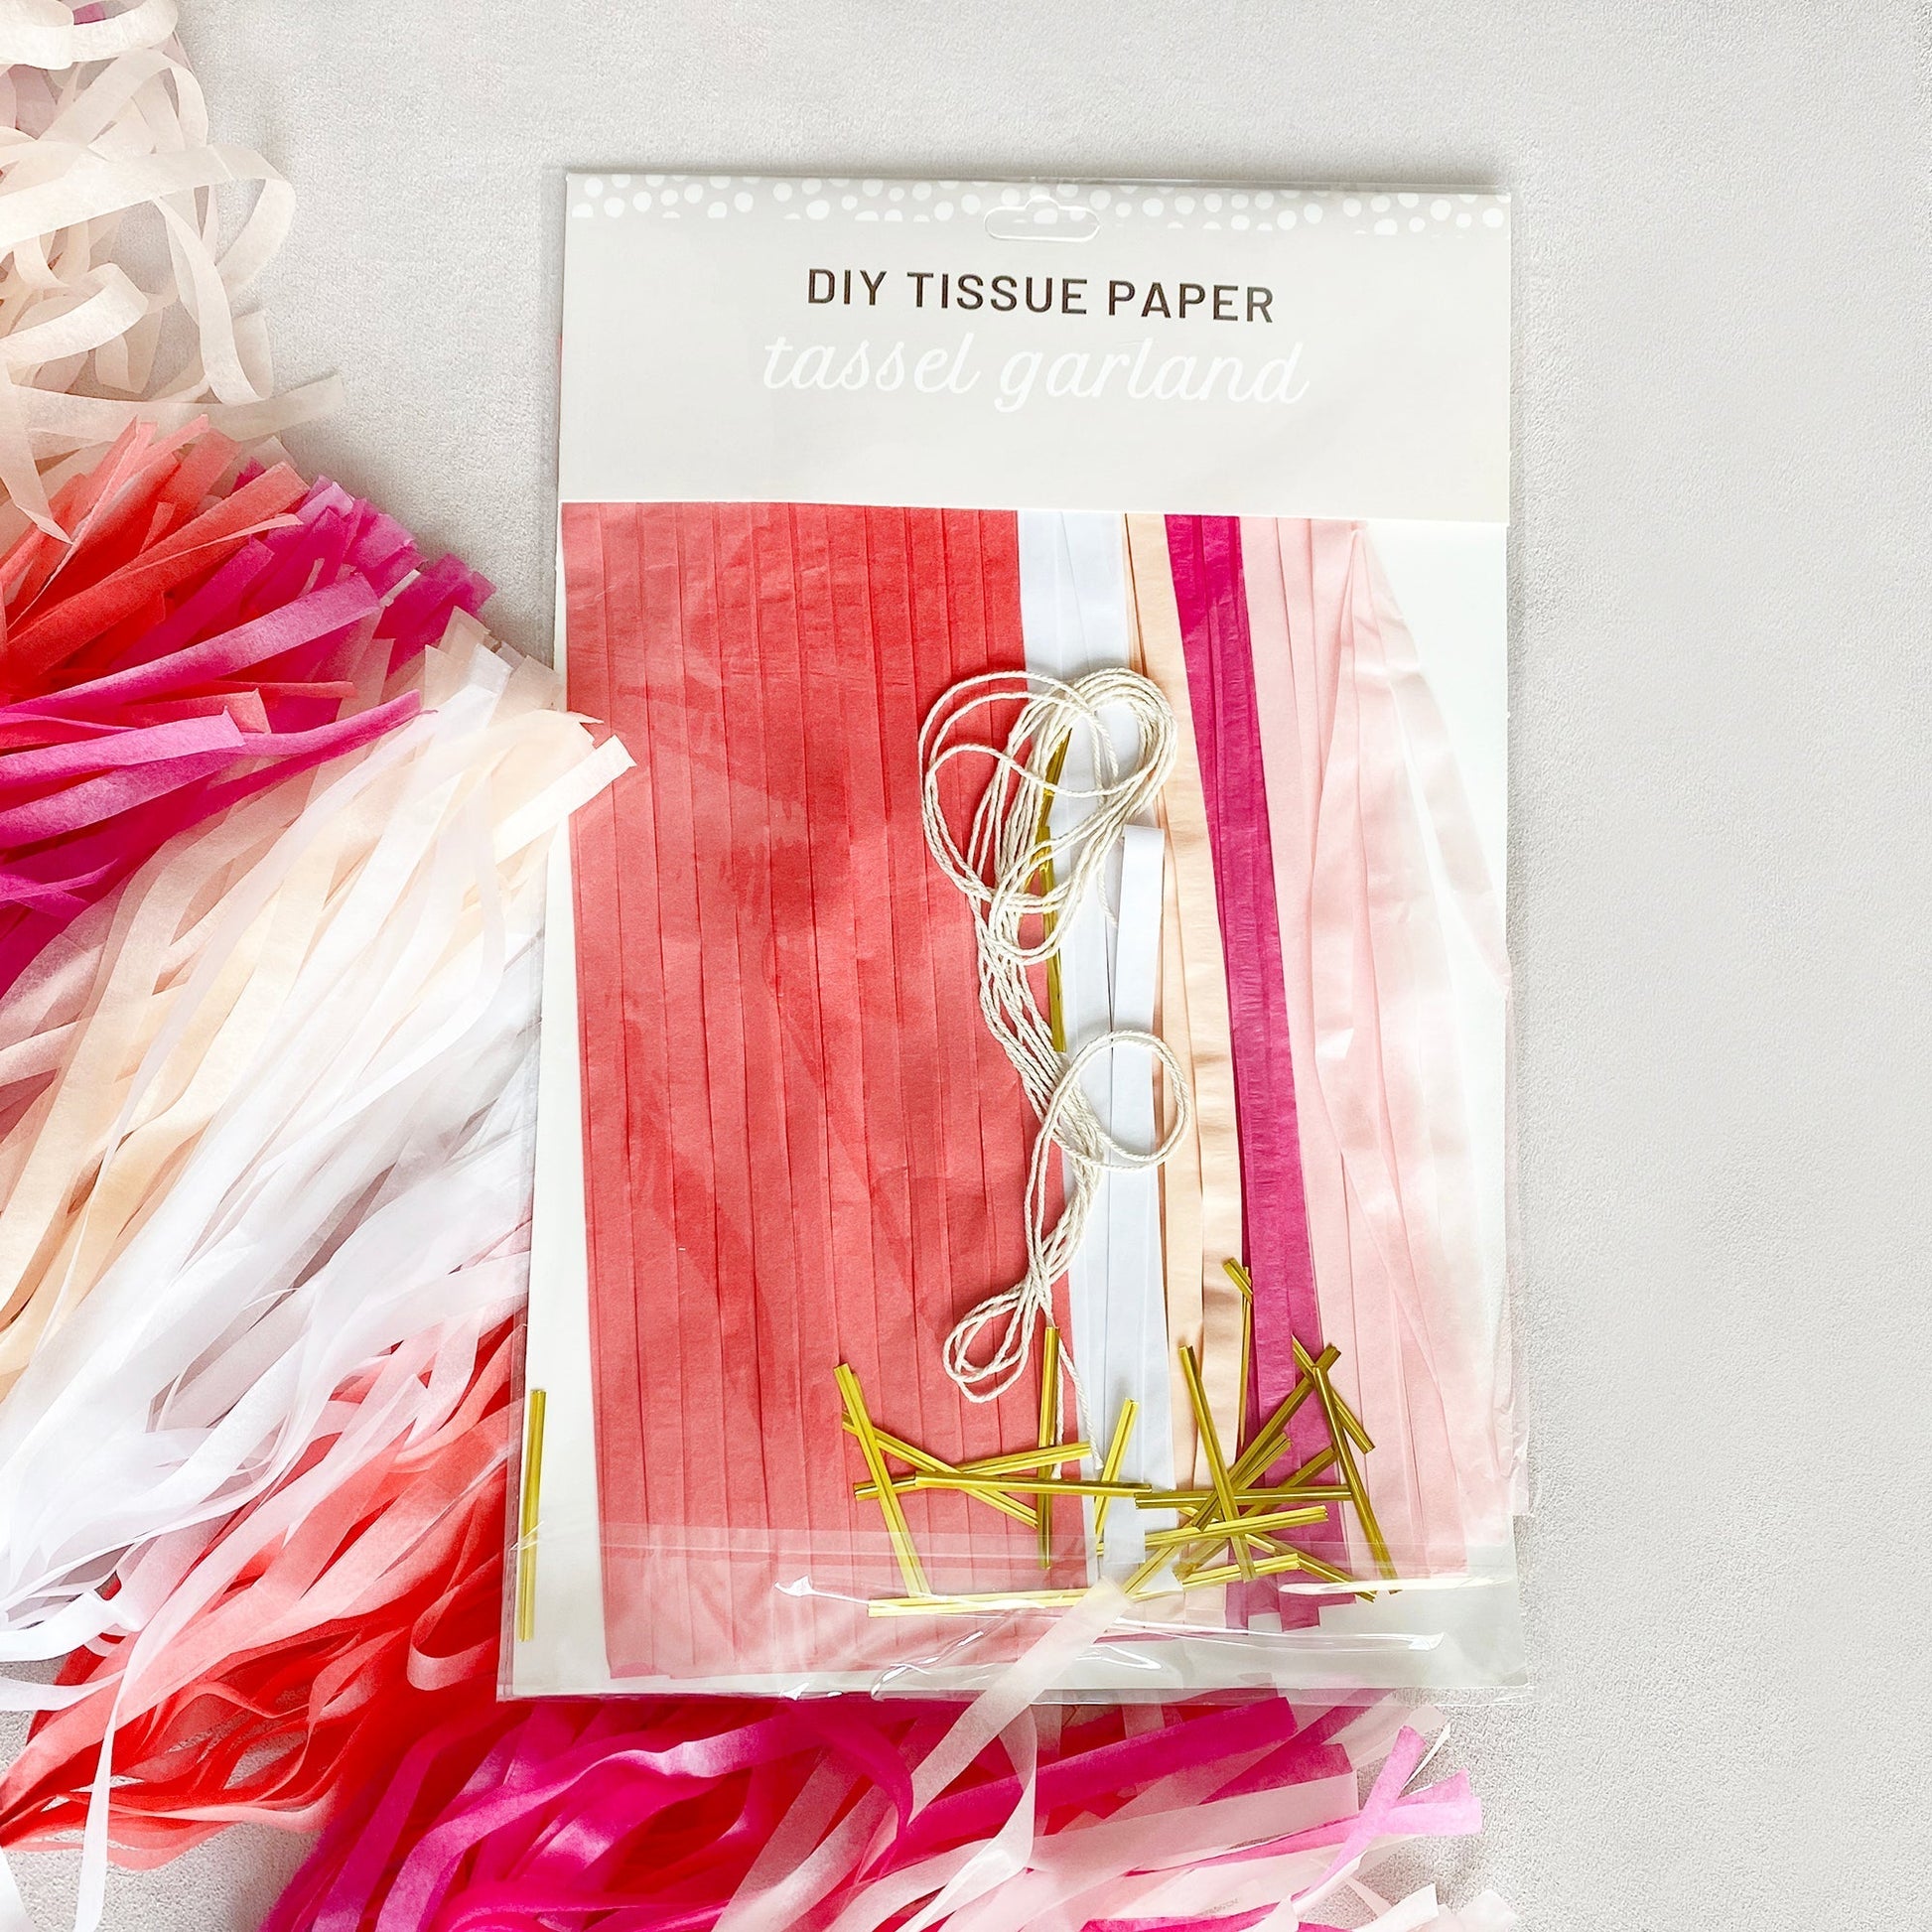 Balloon Tassel DIY Kit tassels Only Tissue Paper Tassel Tails for